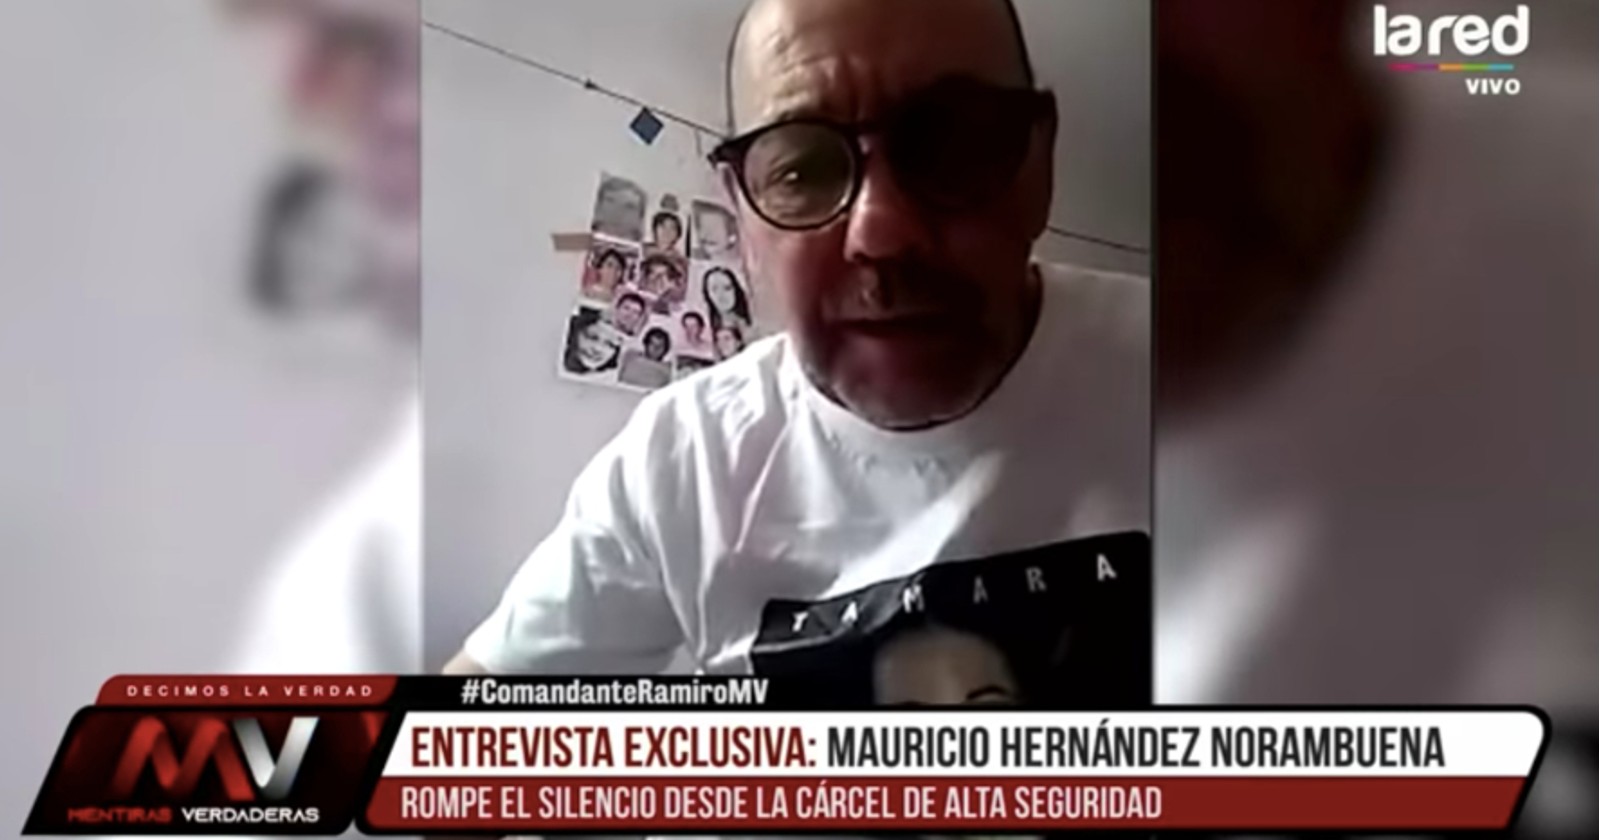 Corte anula sanción contra La Red por entrevista al "comandante Ramiro"